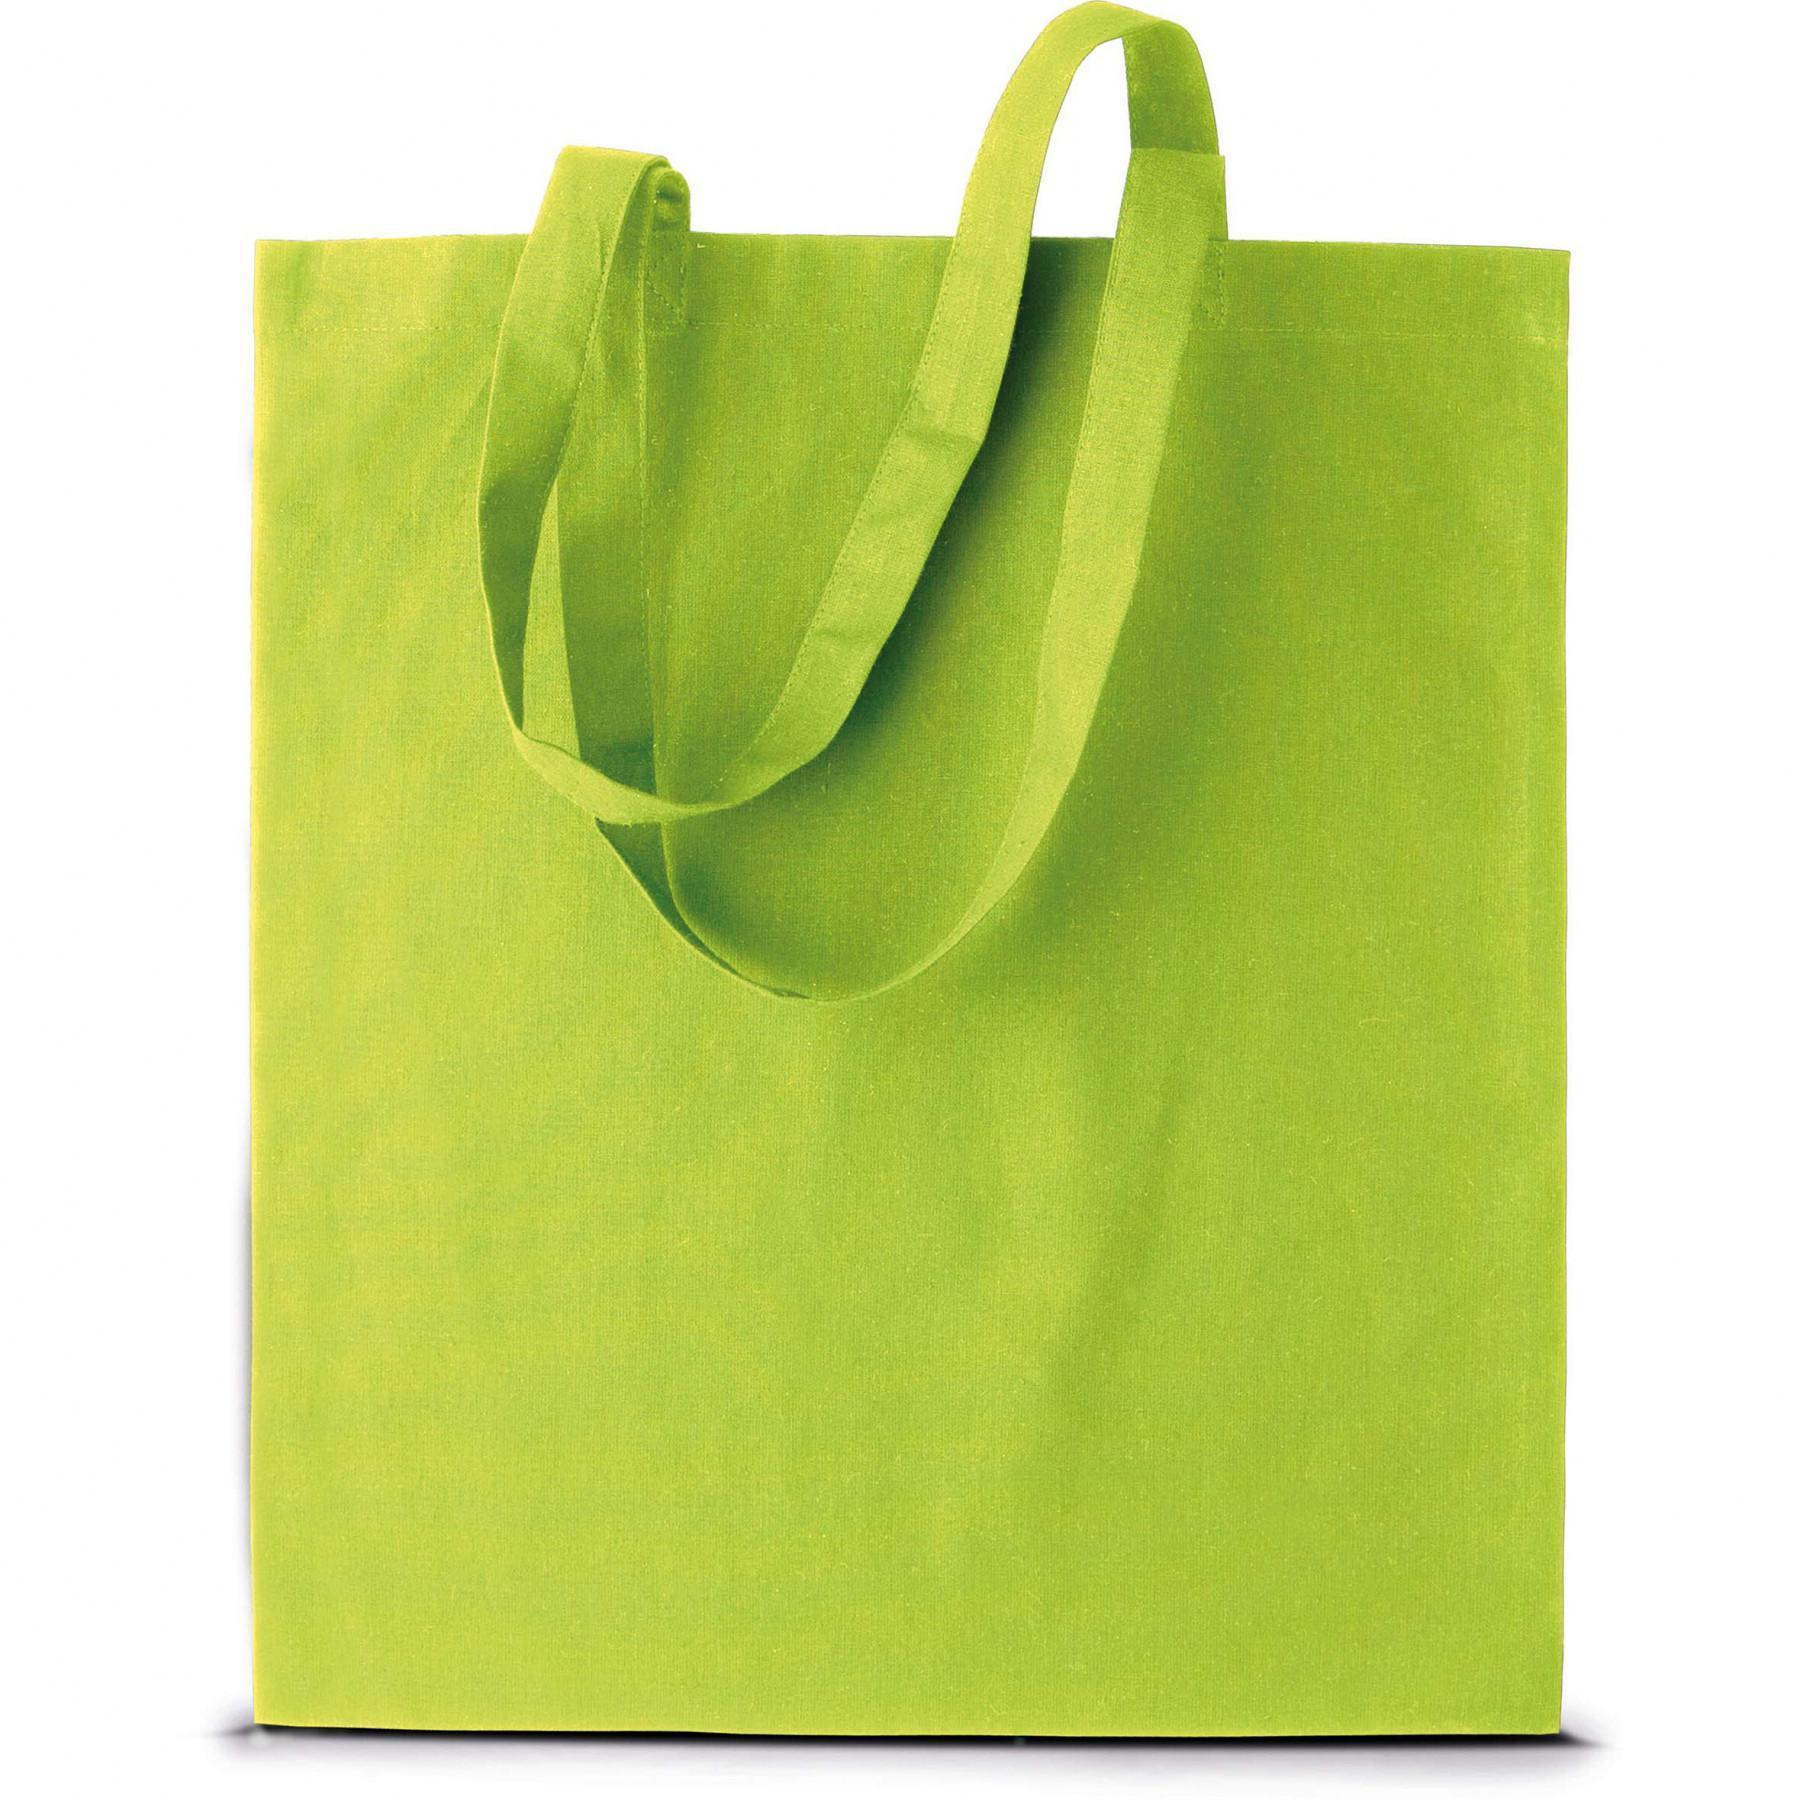 Bag Kimood Shopping Basic